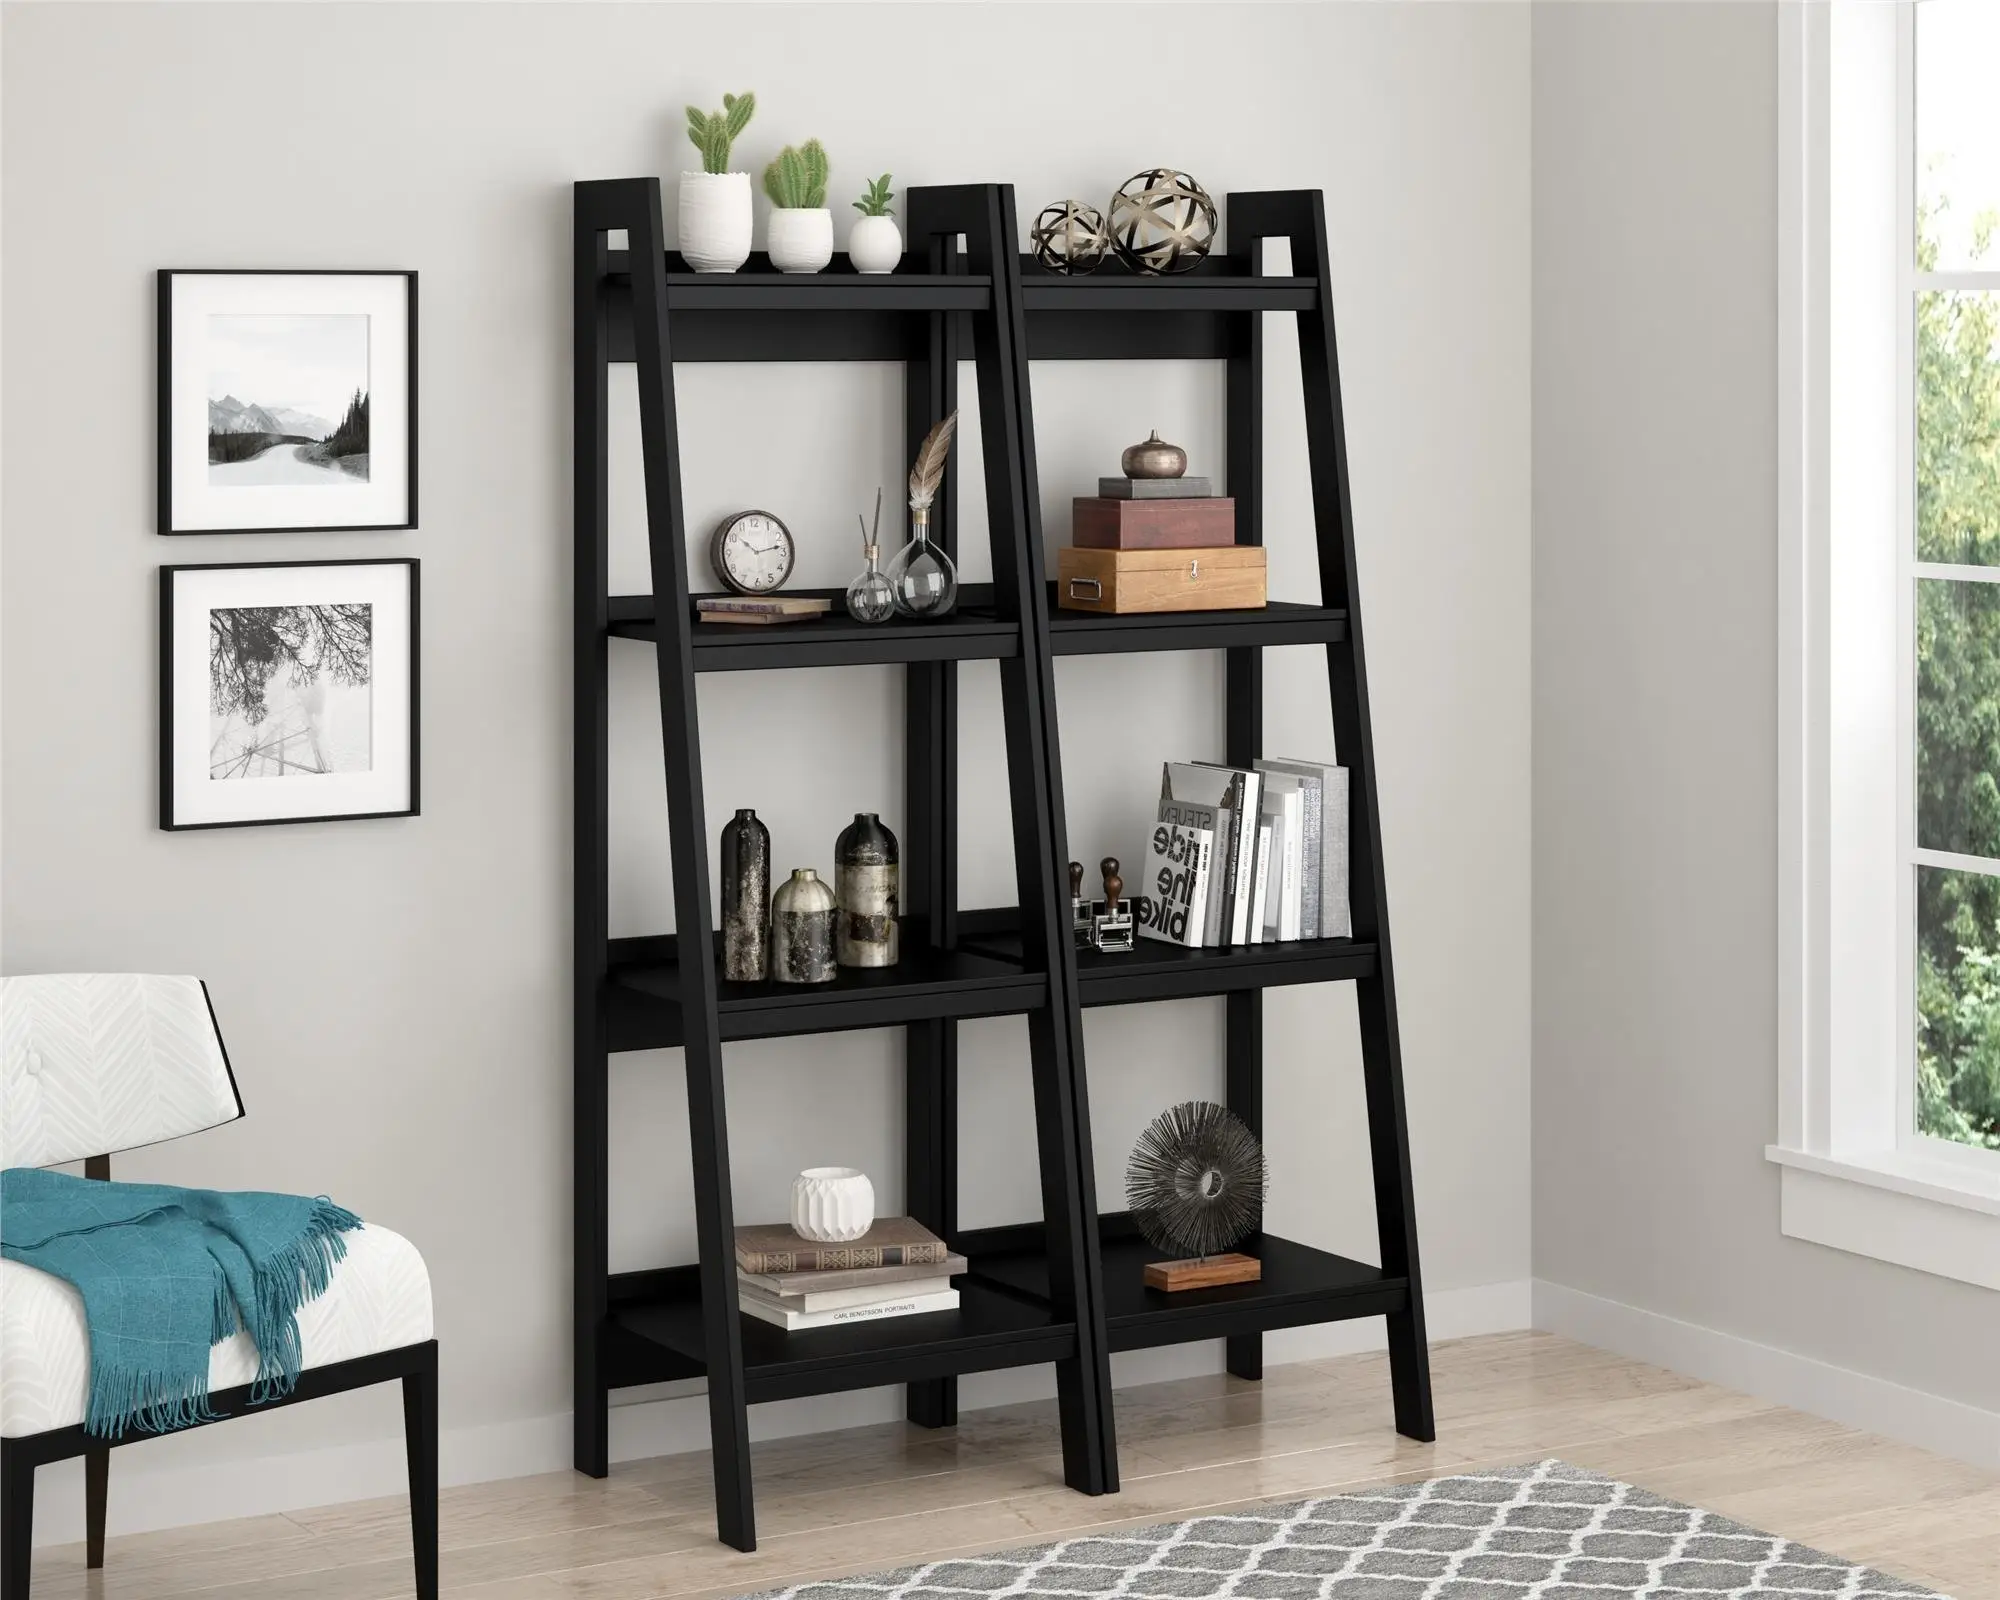 Fábrica al por mayor estantería muebles de sala de estar moderno diseño simple antiguo oficina estanterías escalera forma librería de madera